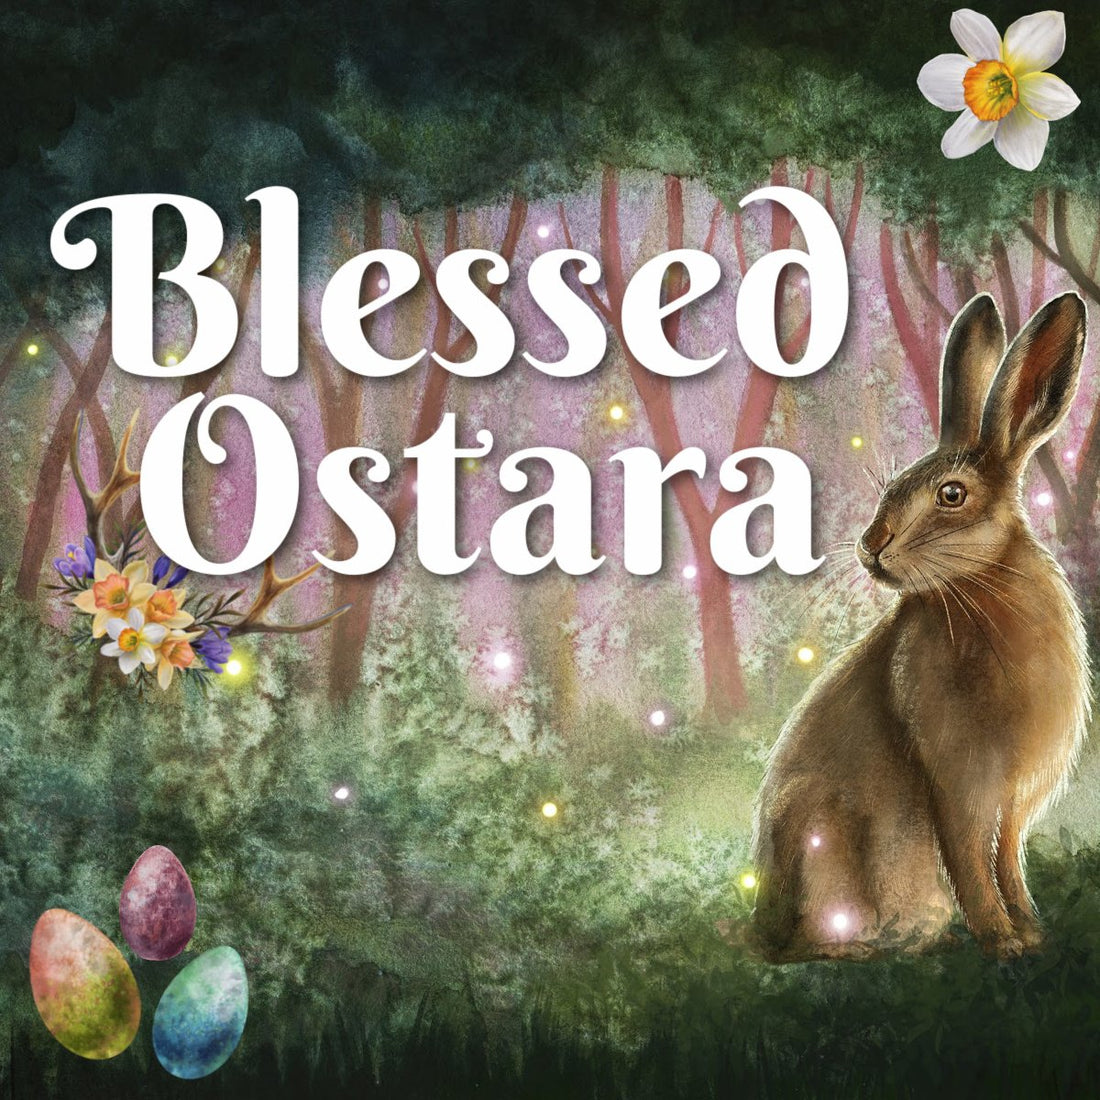 Blessed Ostara!